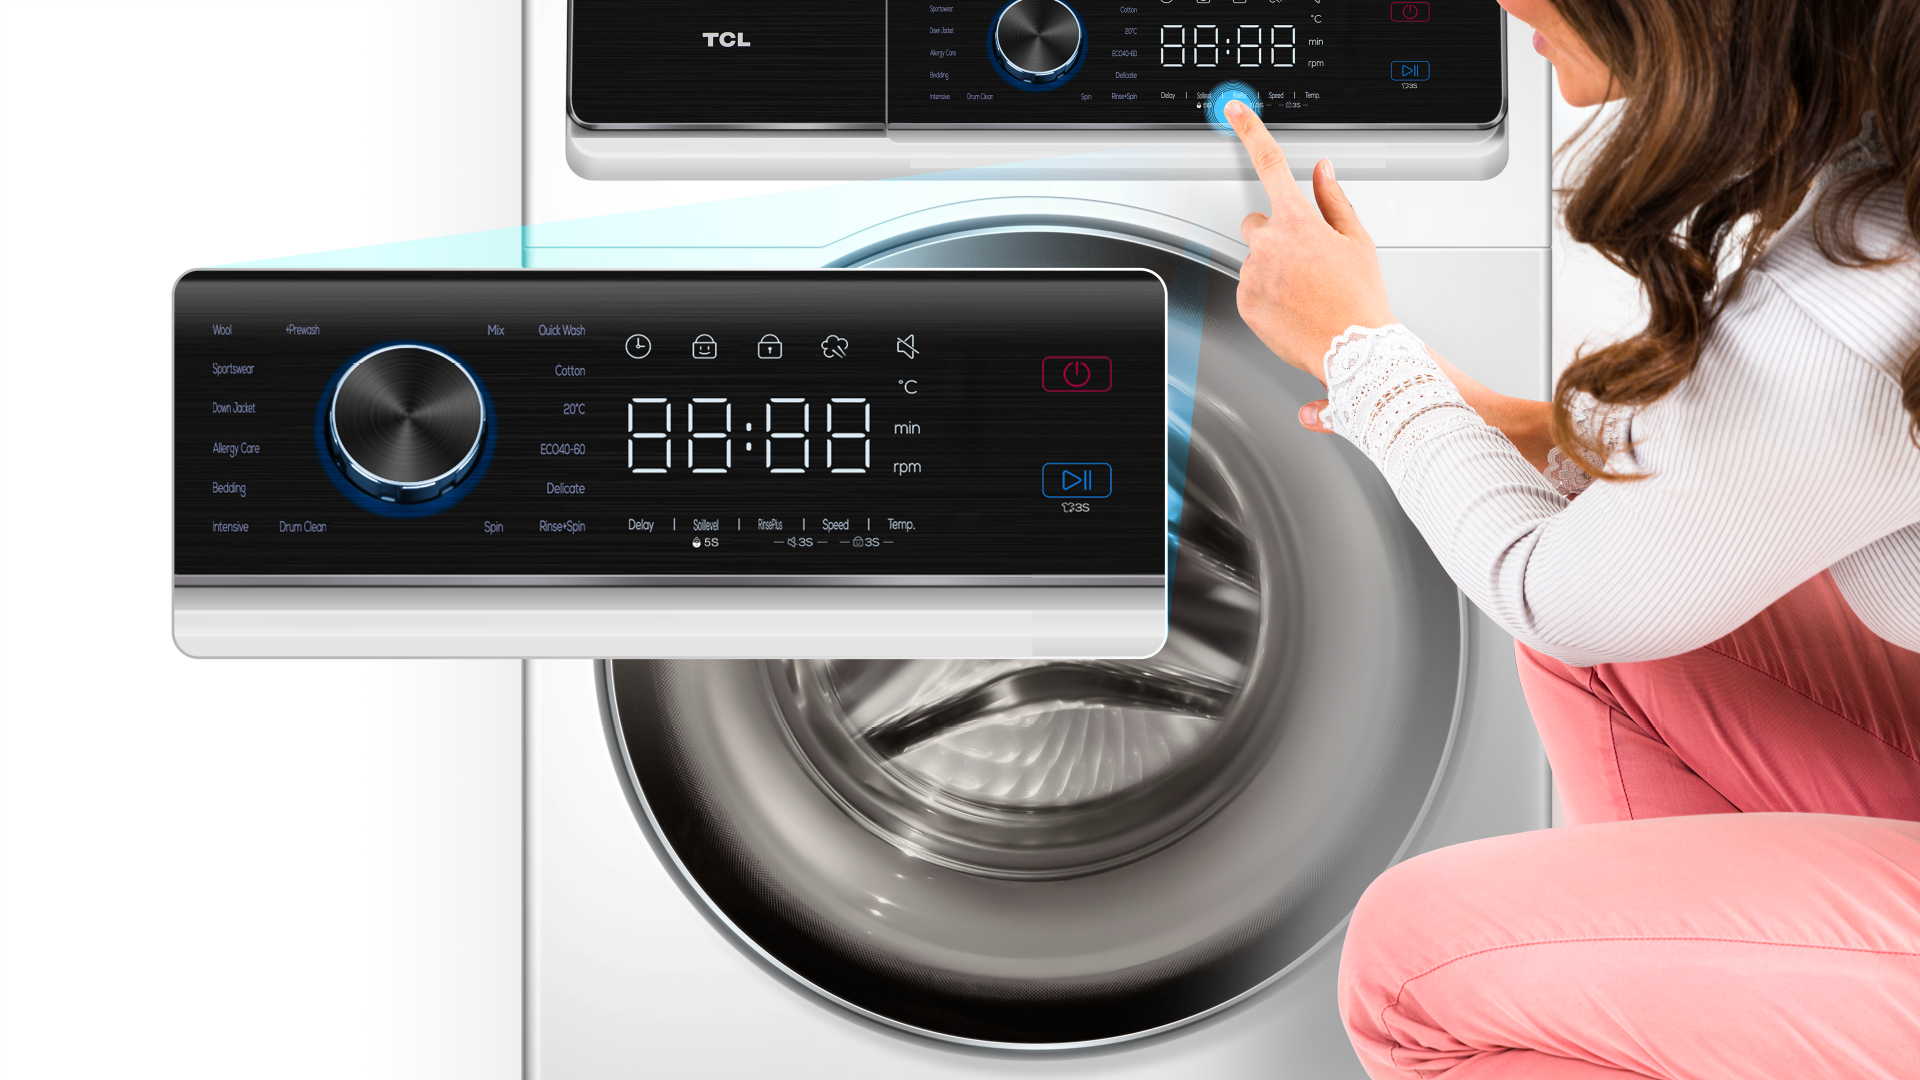 TCL washing machine CP0824WC0 control panel